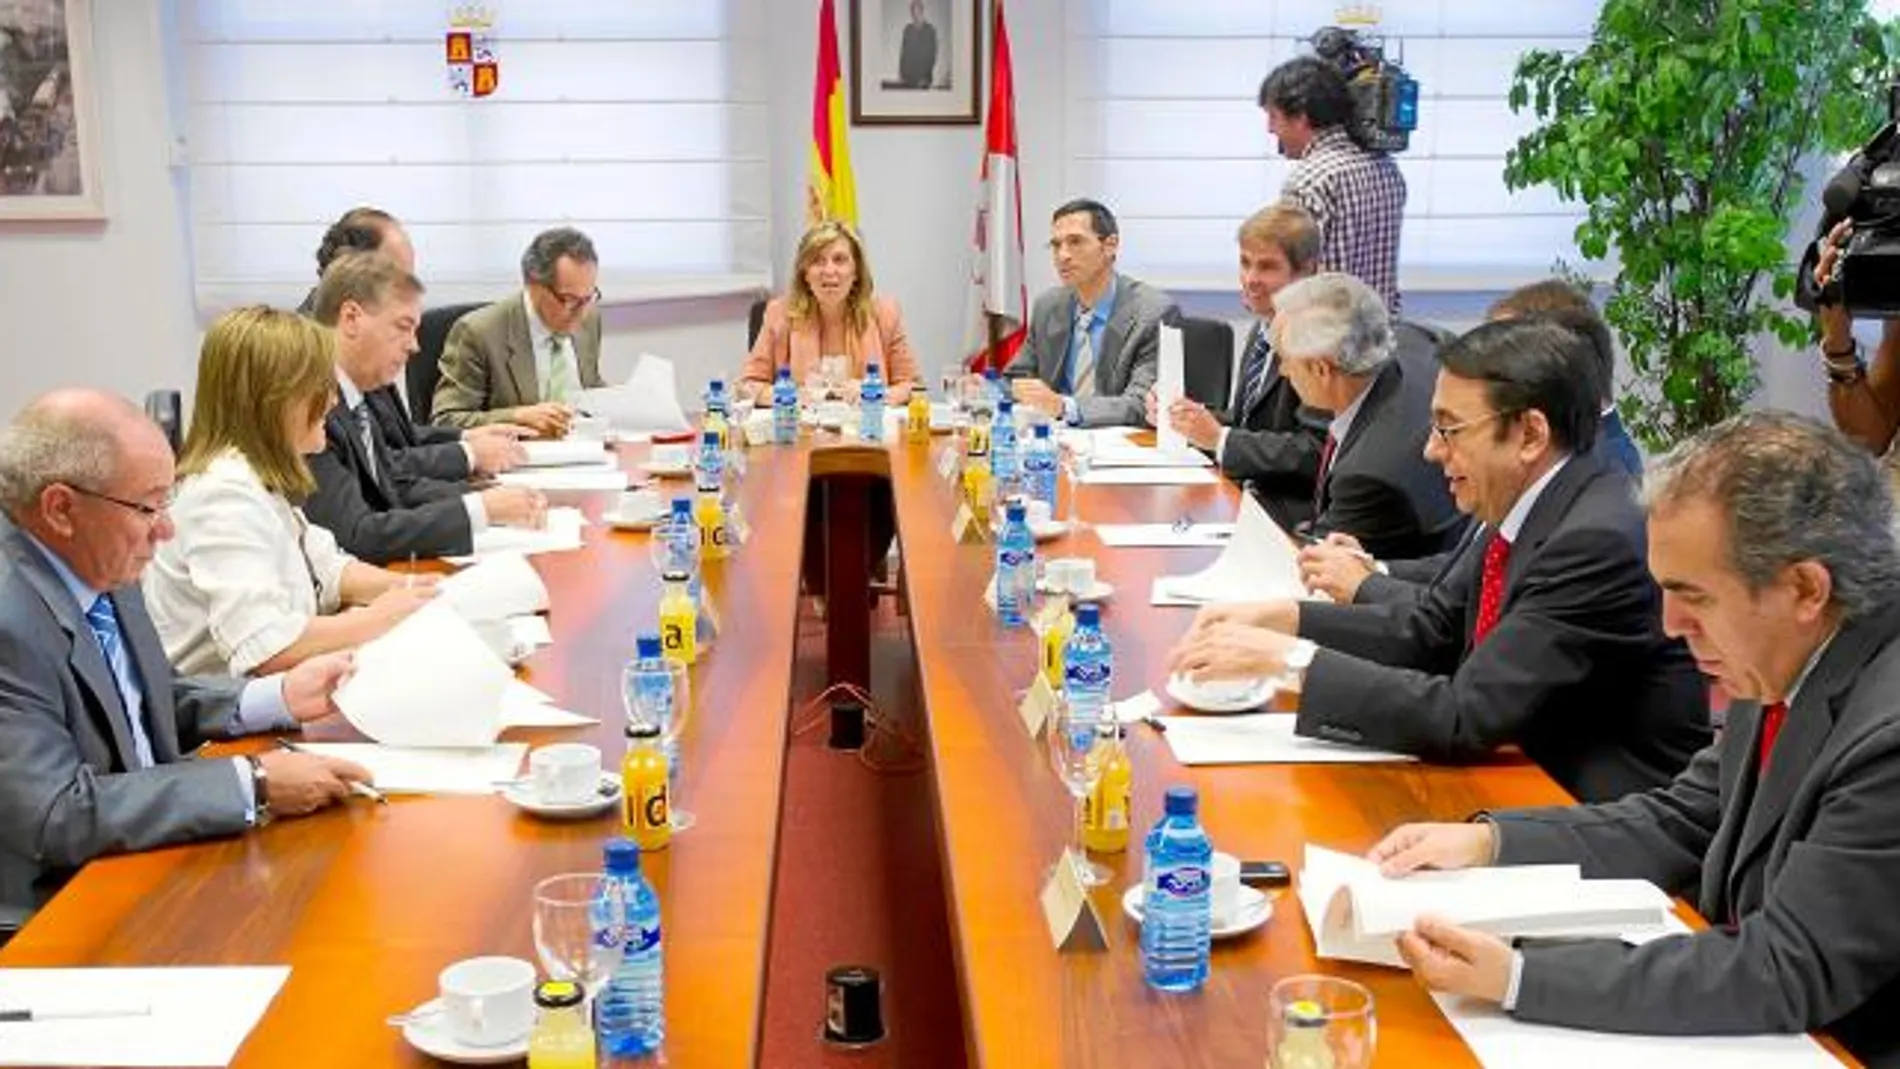 La viceconsejera María José Salgueiro presidió la Comisión Asesora de Justicia de Castilla y León